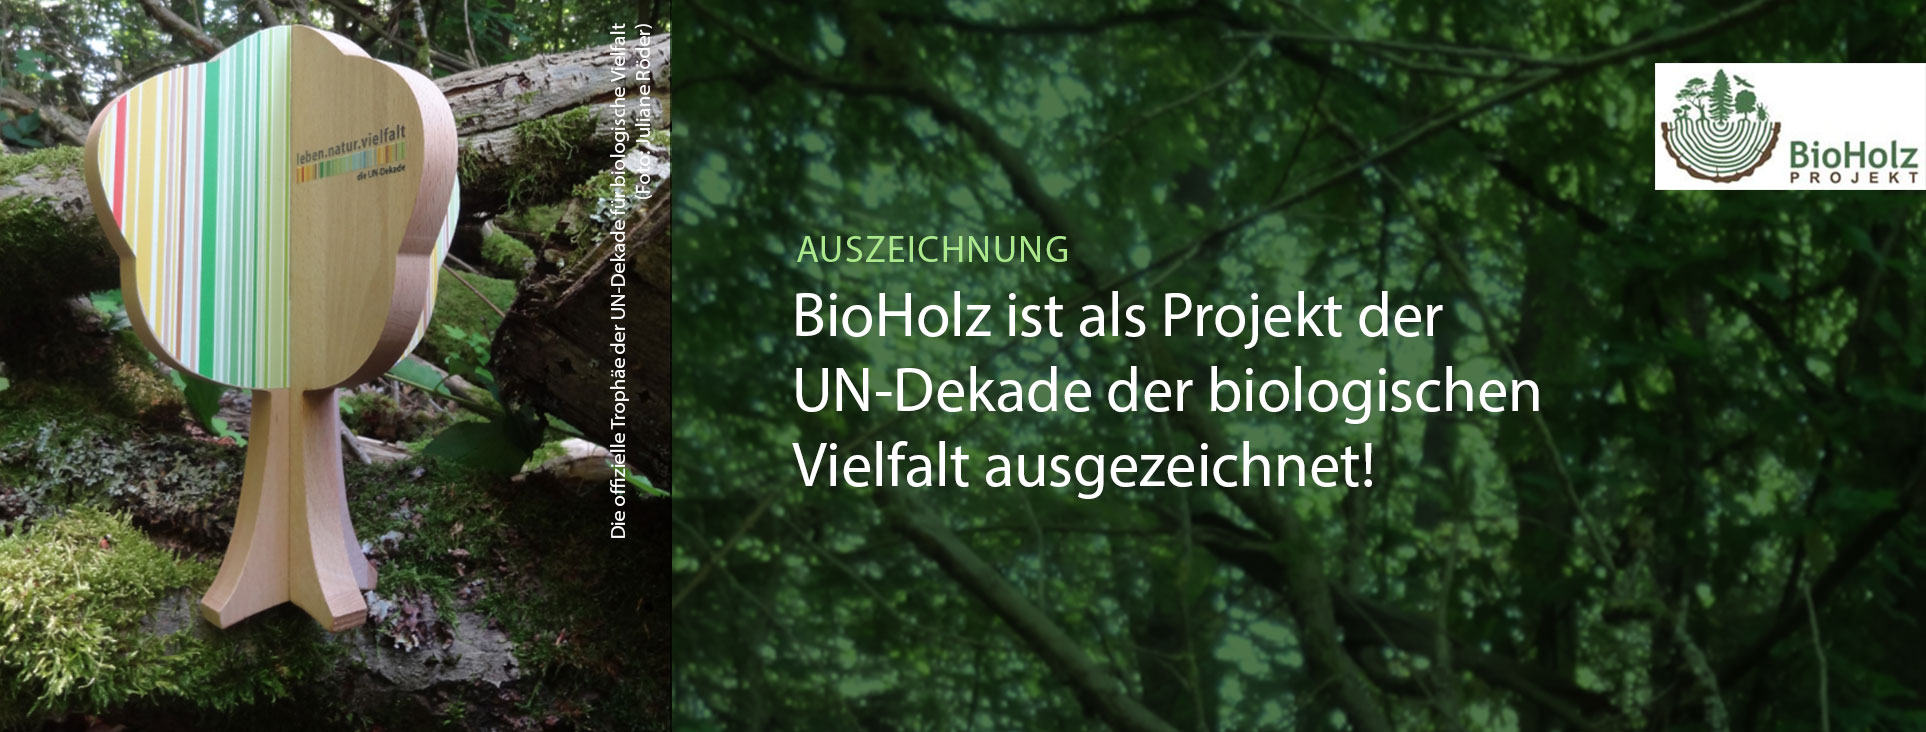 Titelbild der UN-Dekande Auszeichnung für das BiloHolz-Projekt